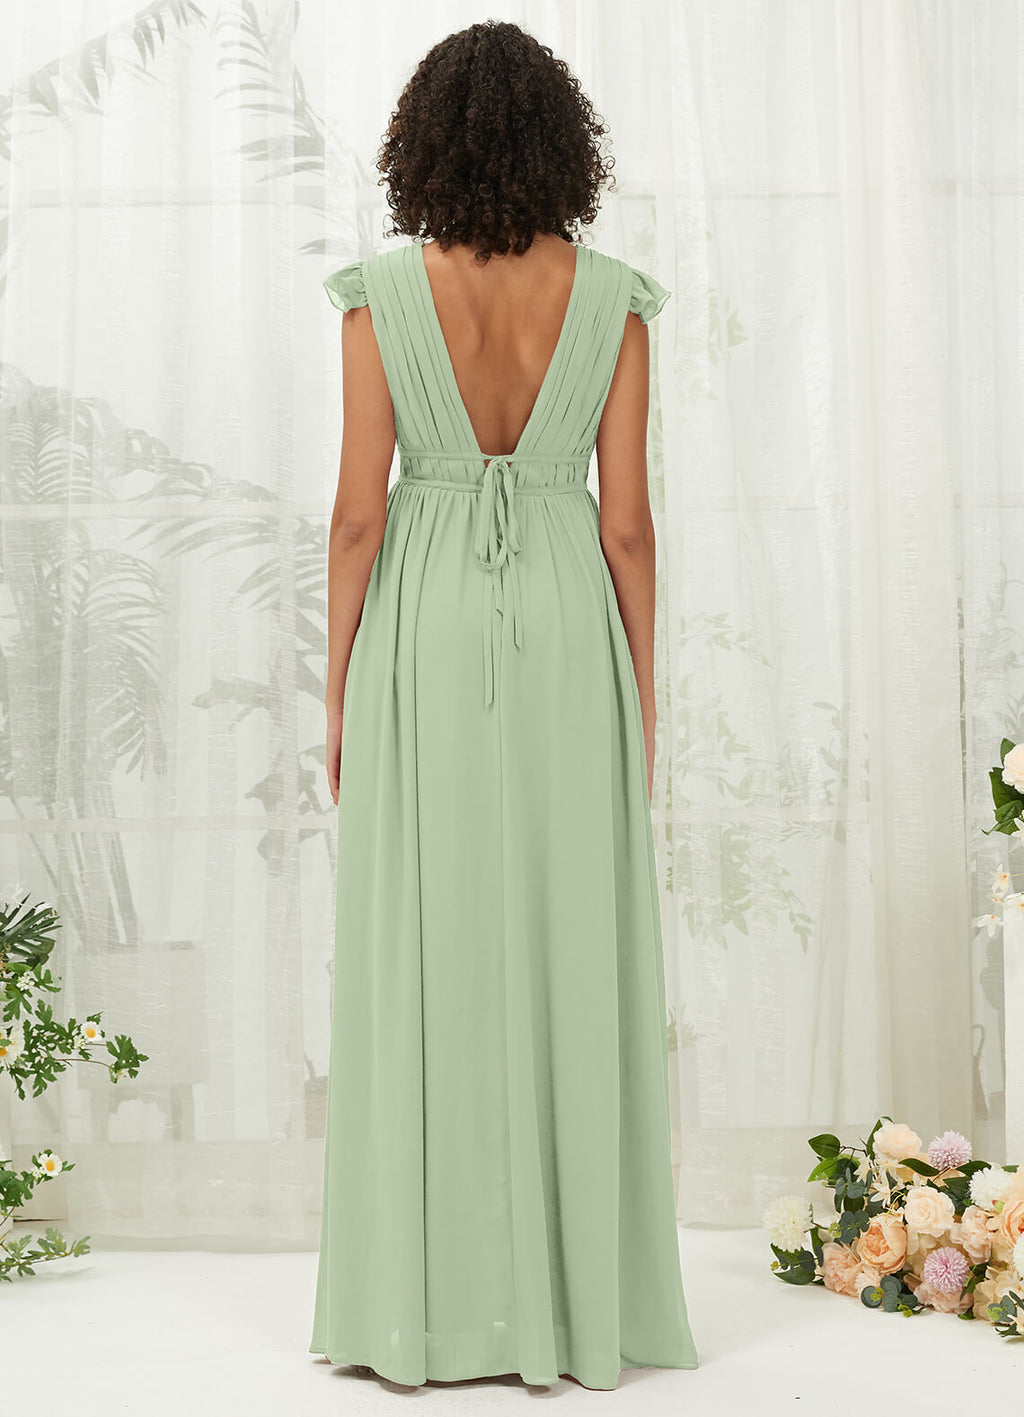 NZ Bridal Sage Green Sheer V Neck Chiffon Flowy Maxi Bridesmaid Dress R0410 Collins a